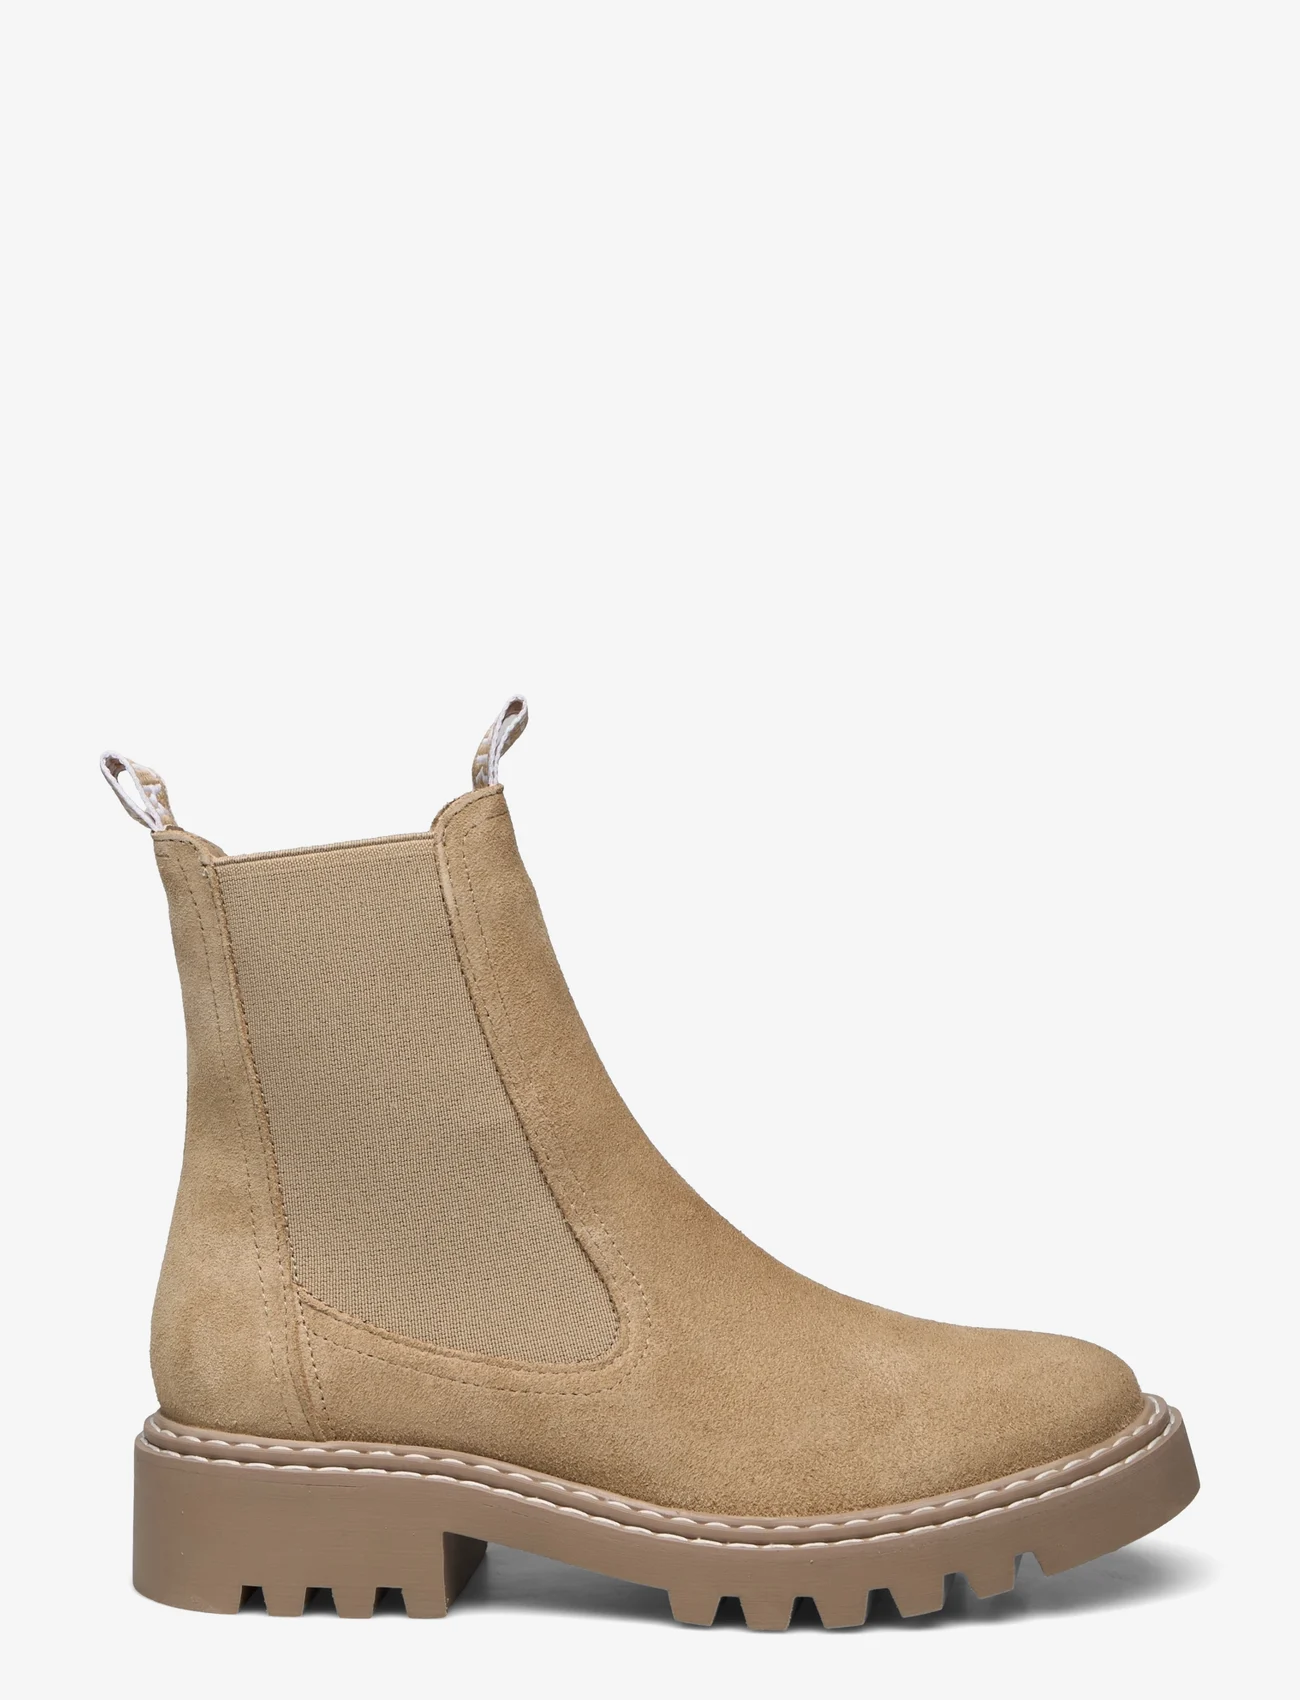 Tamaris - Women Boots - beige sued.uni - 1